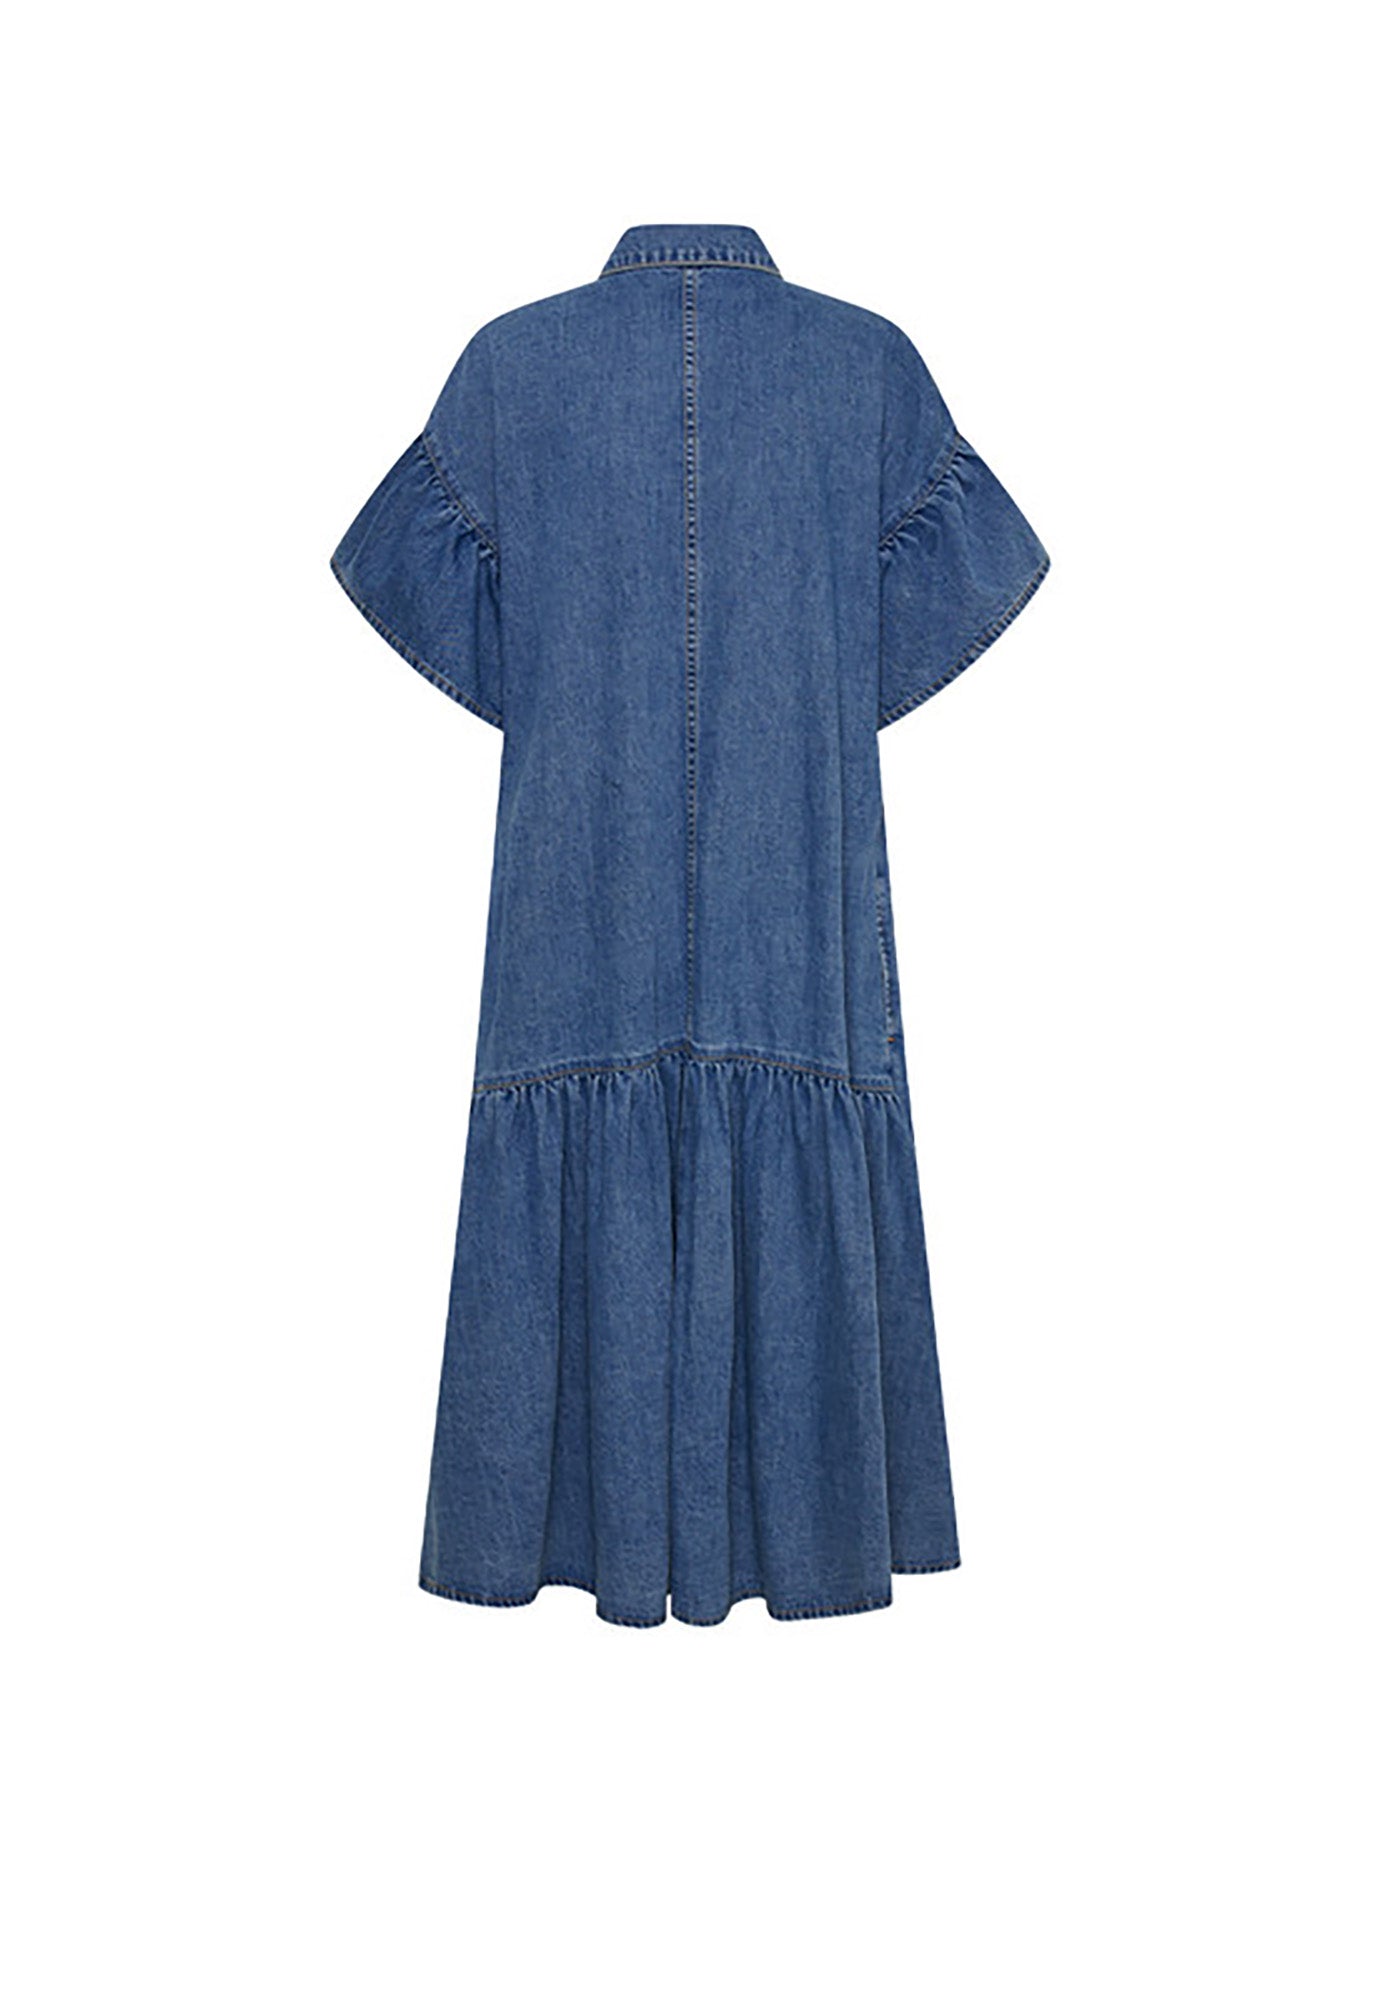 bohemian traders - genoa denim midi dress - mid blue